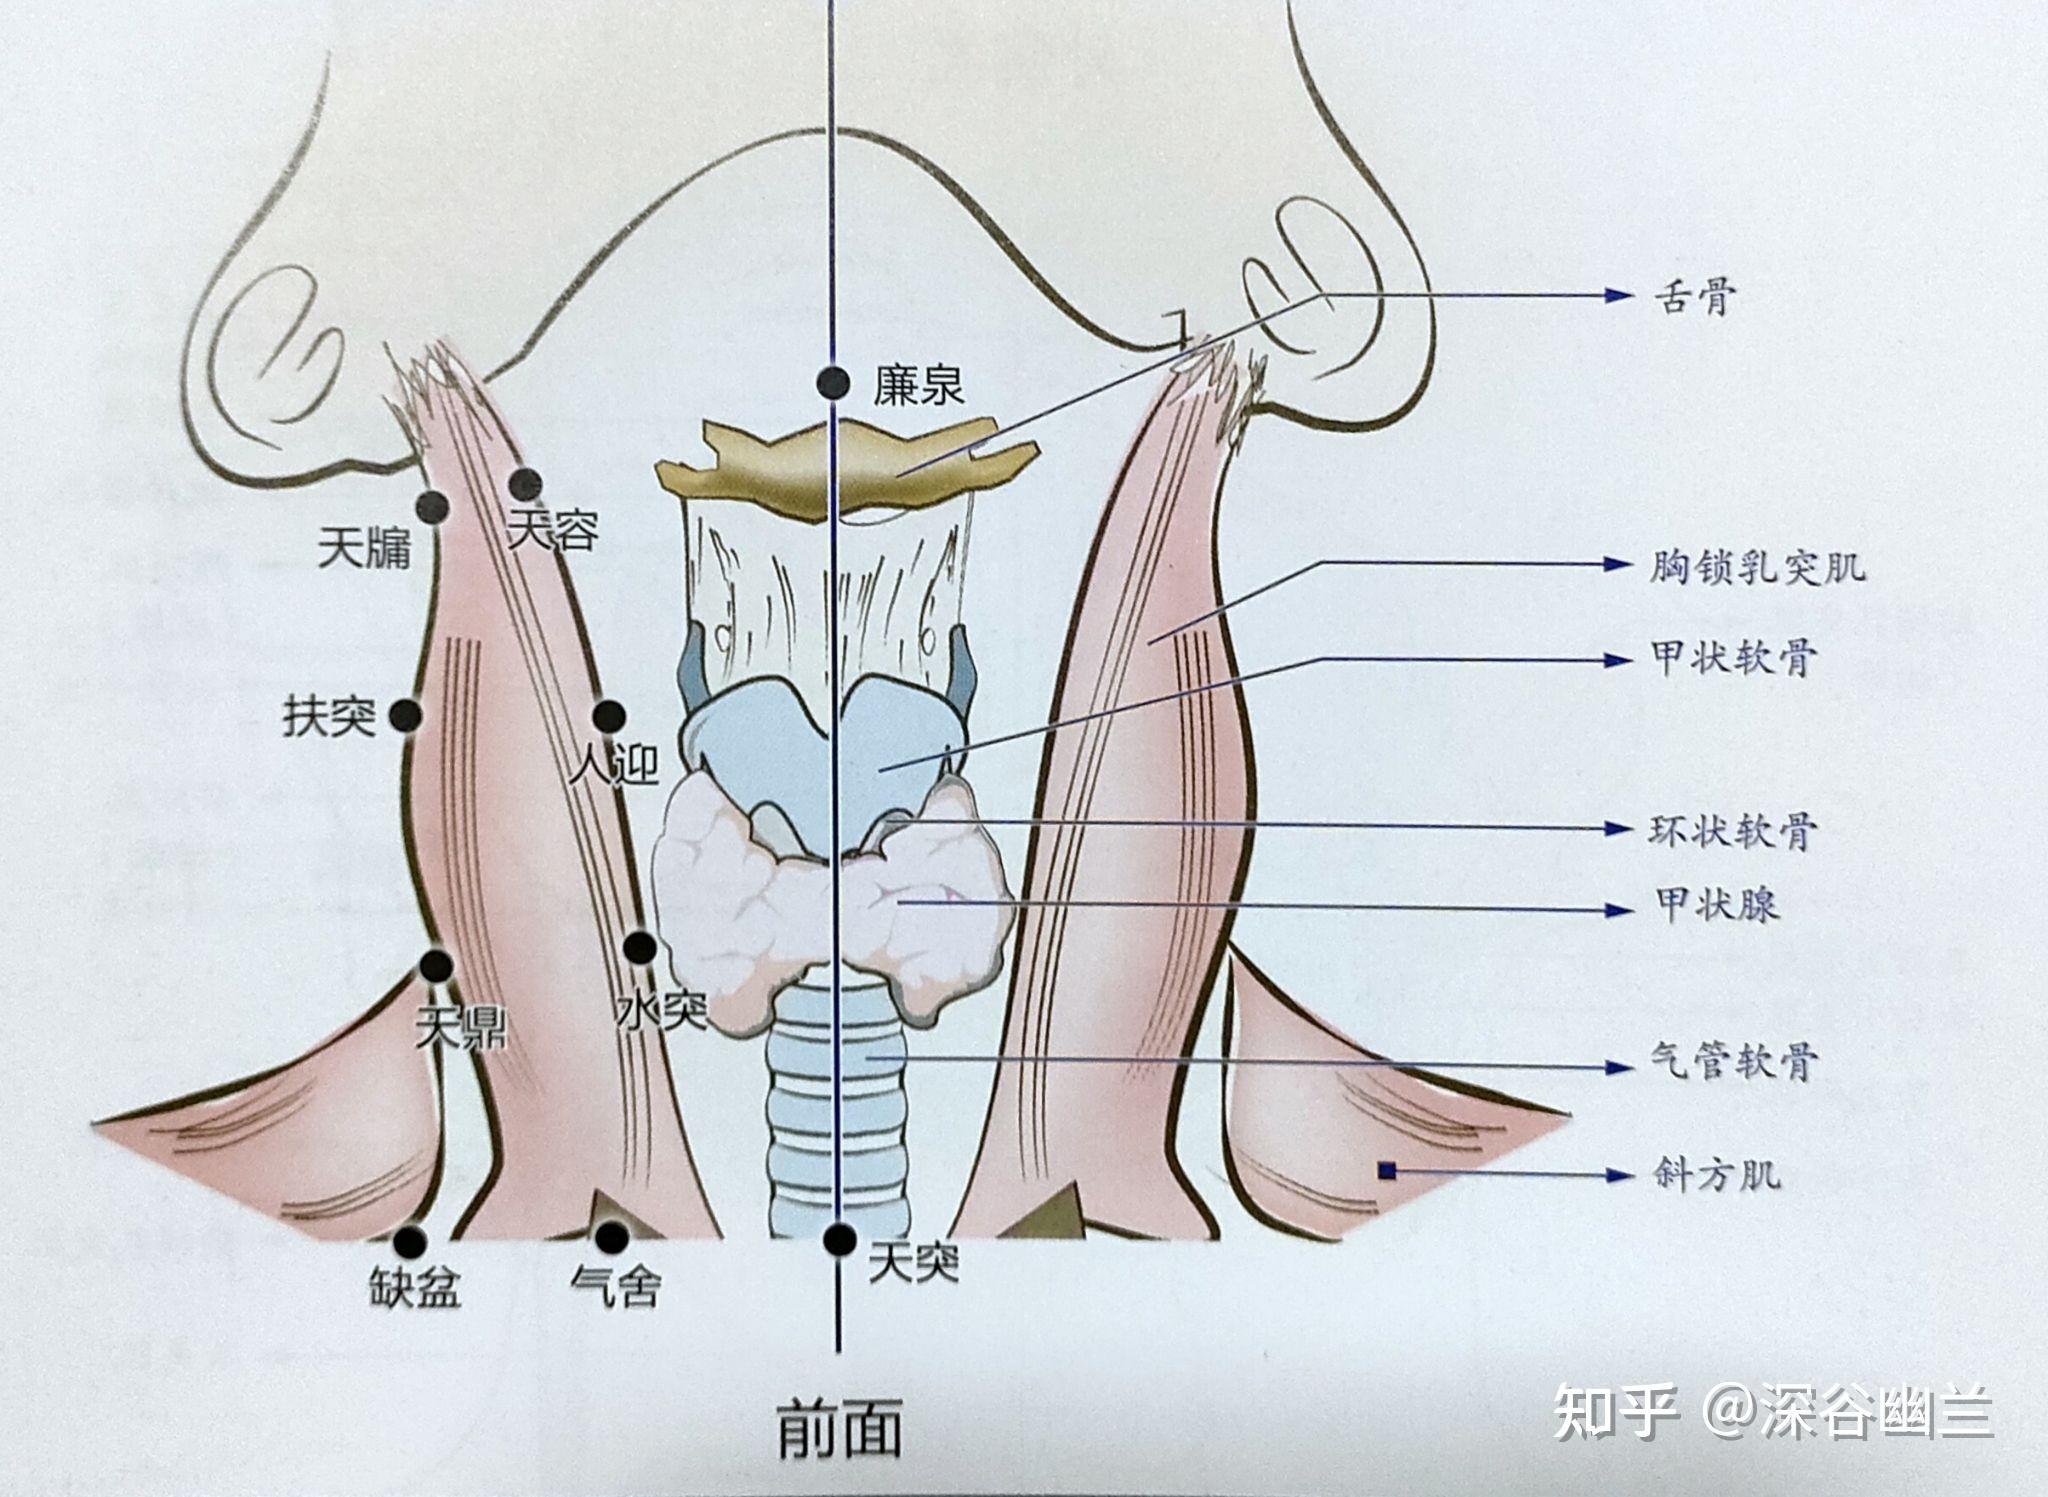 从胸锁乳突肌前缘,肩胛舌骨肌后缘,咽缩肌处